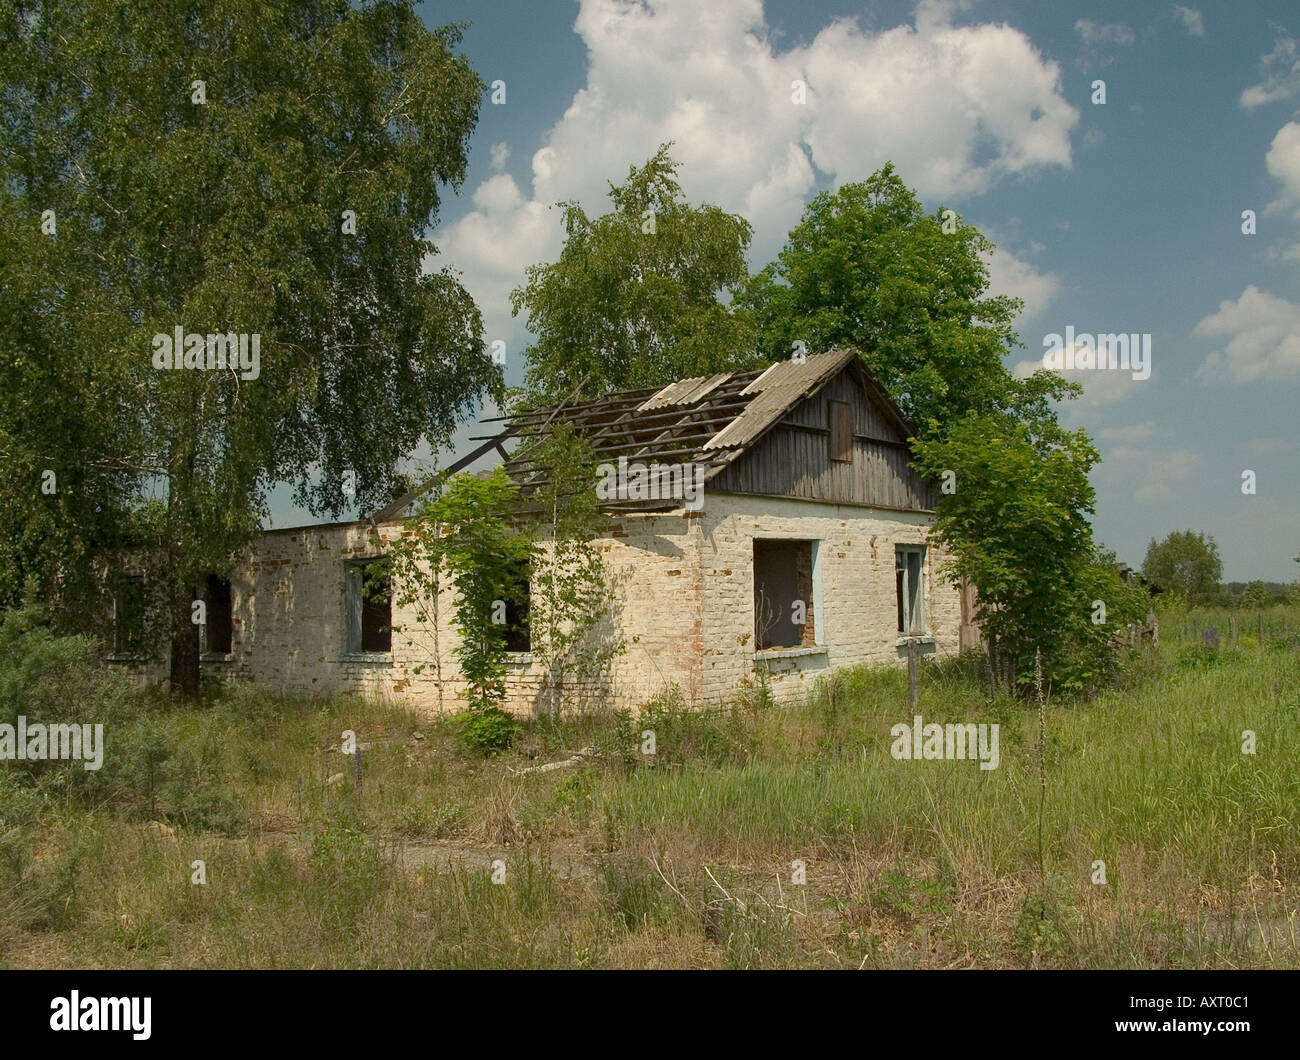 Abbandonata casa abbandonata nel deserto villaggio bielorusso, Chernobyl esclusione zona vicina Ucraina Bielorussia confine di stato Foto Stock